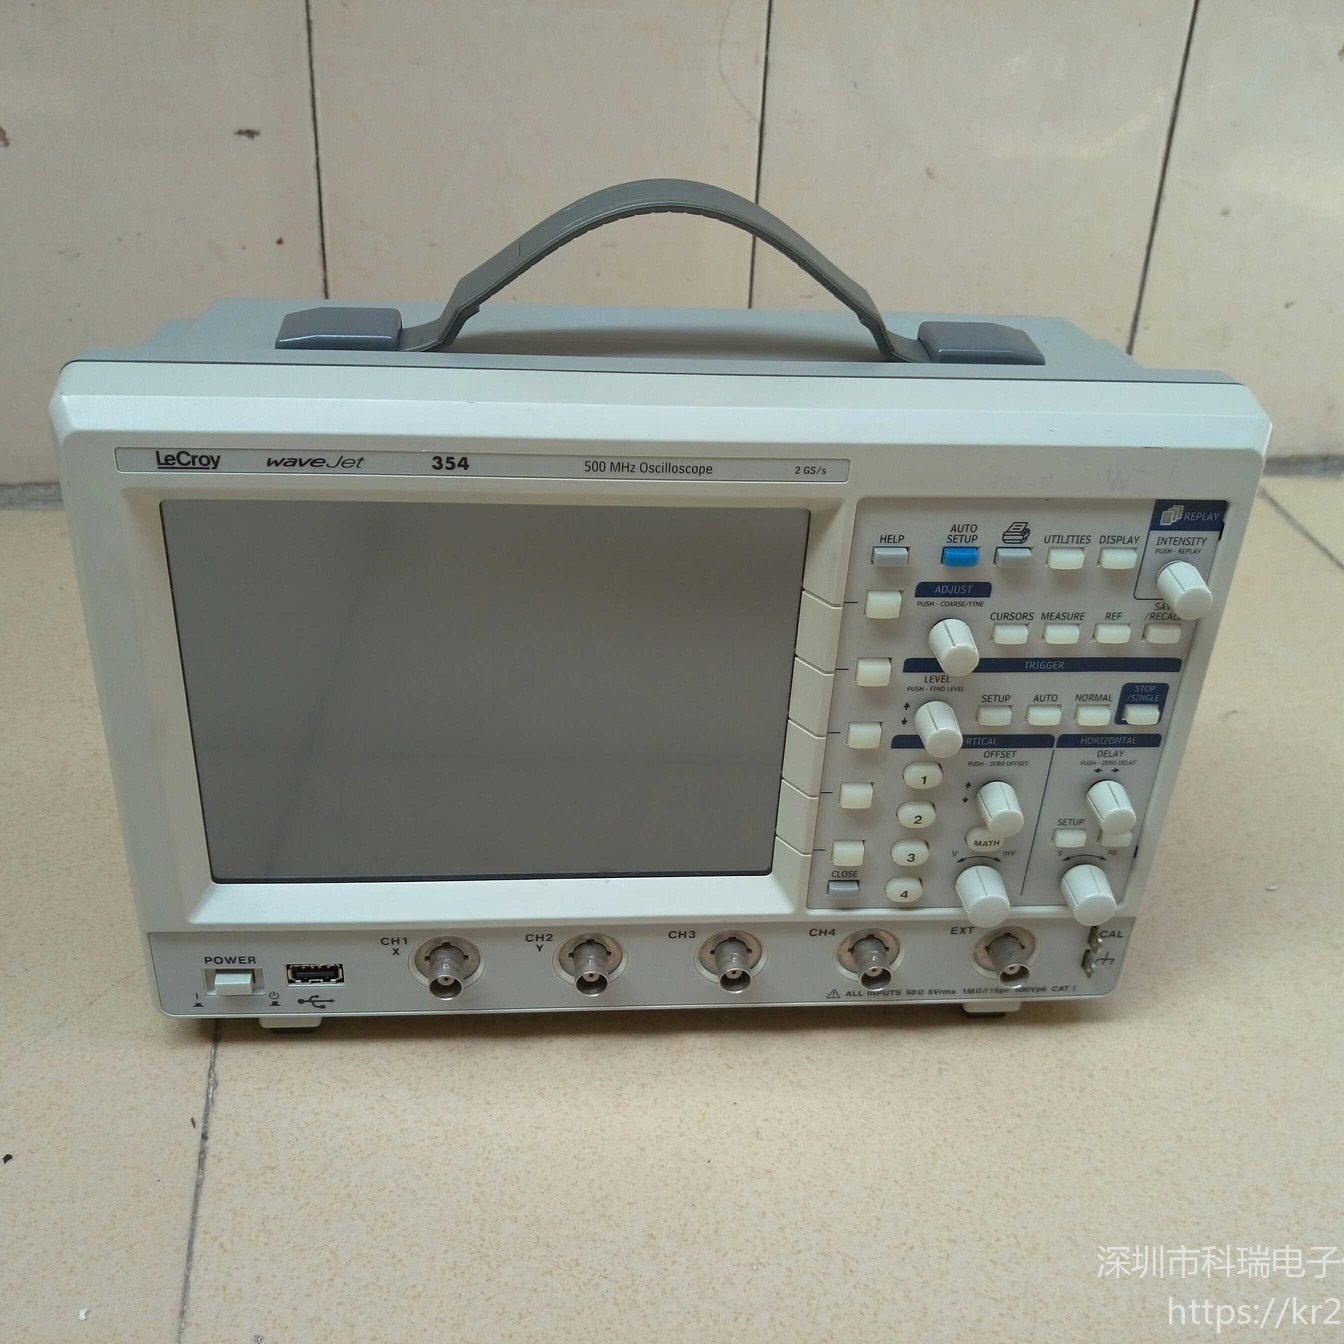 出售/回收 横河Yokogawa DLM6000 示波器 降价出售